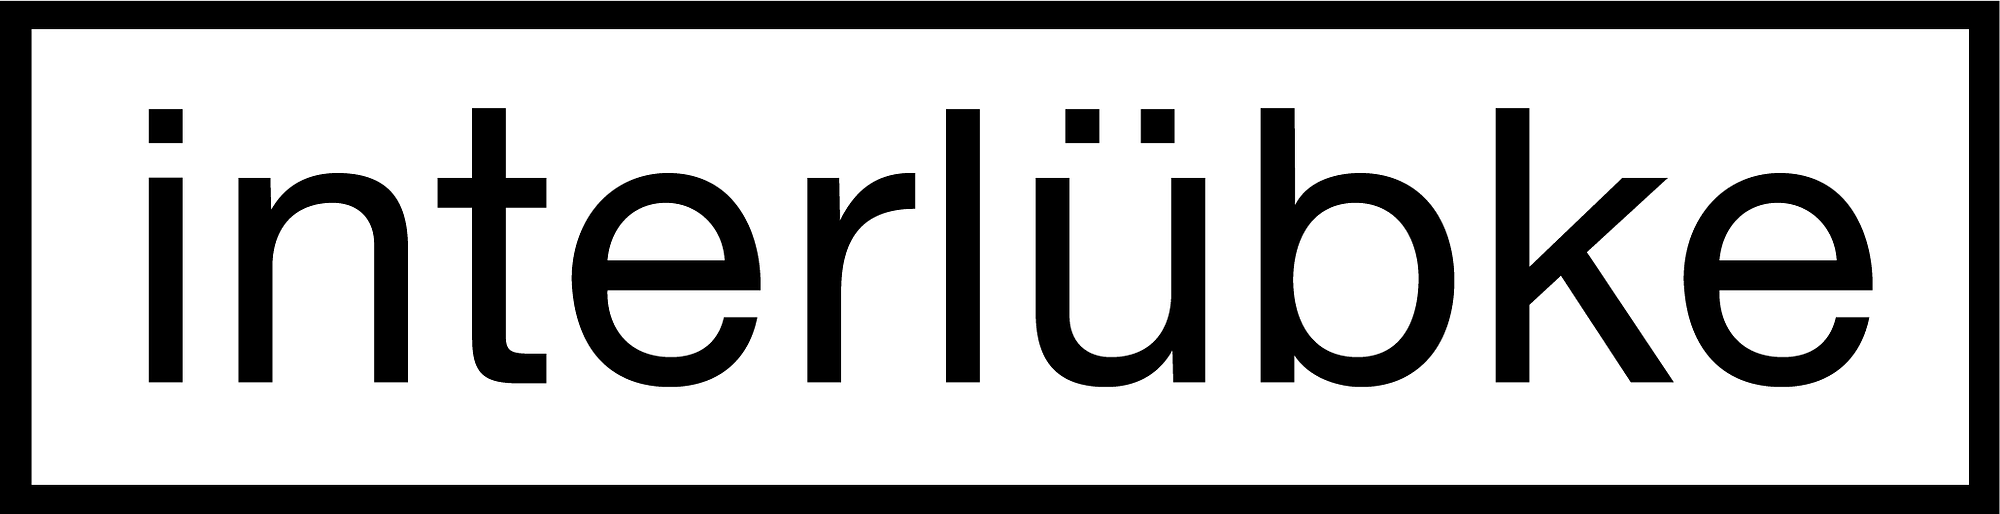 Interlübke_Logo Black